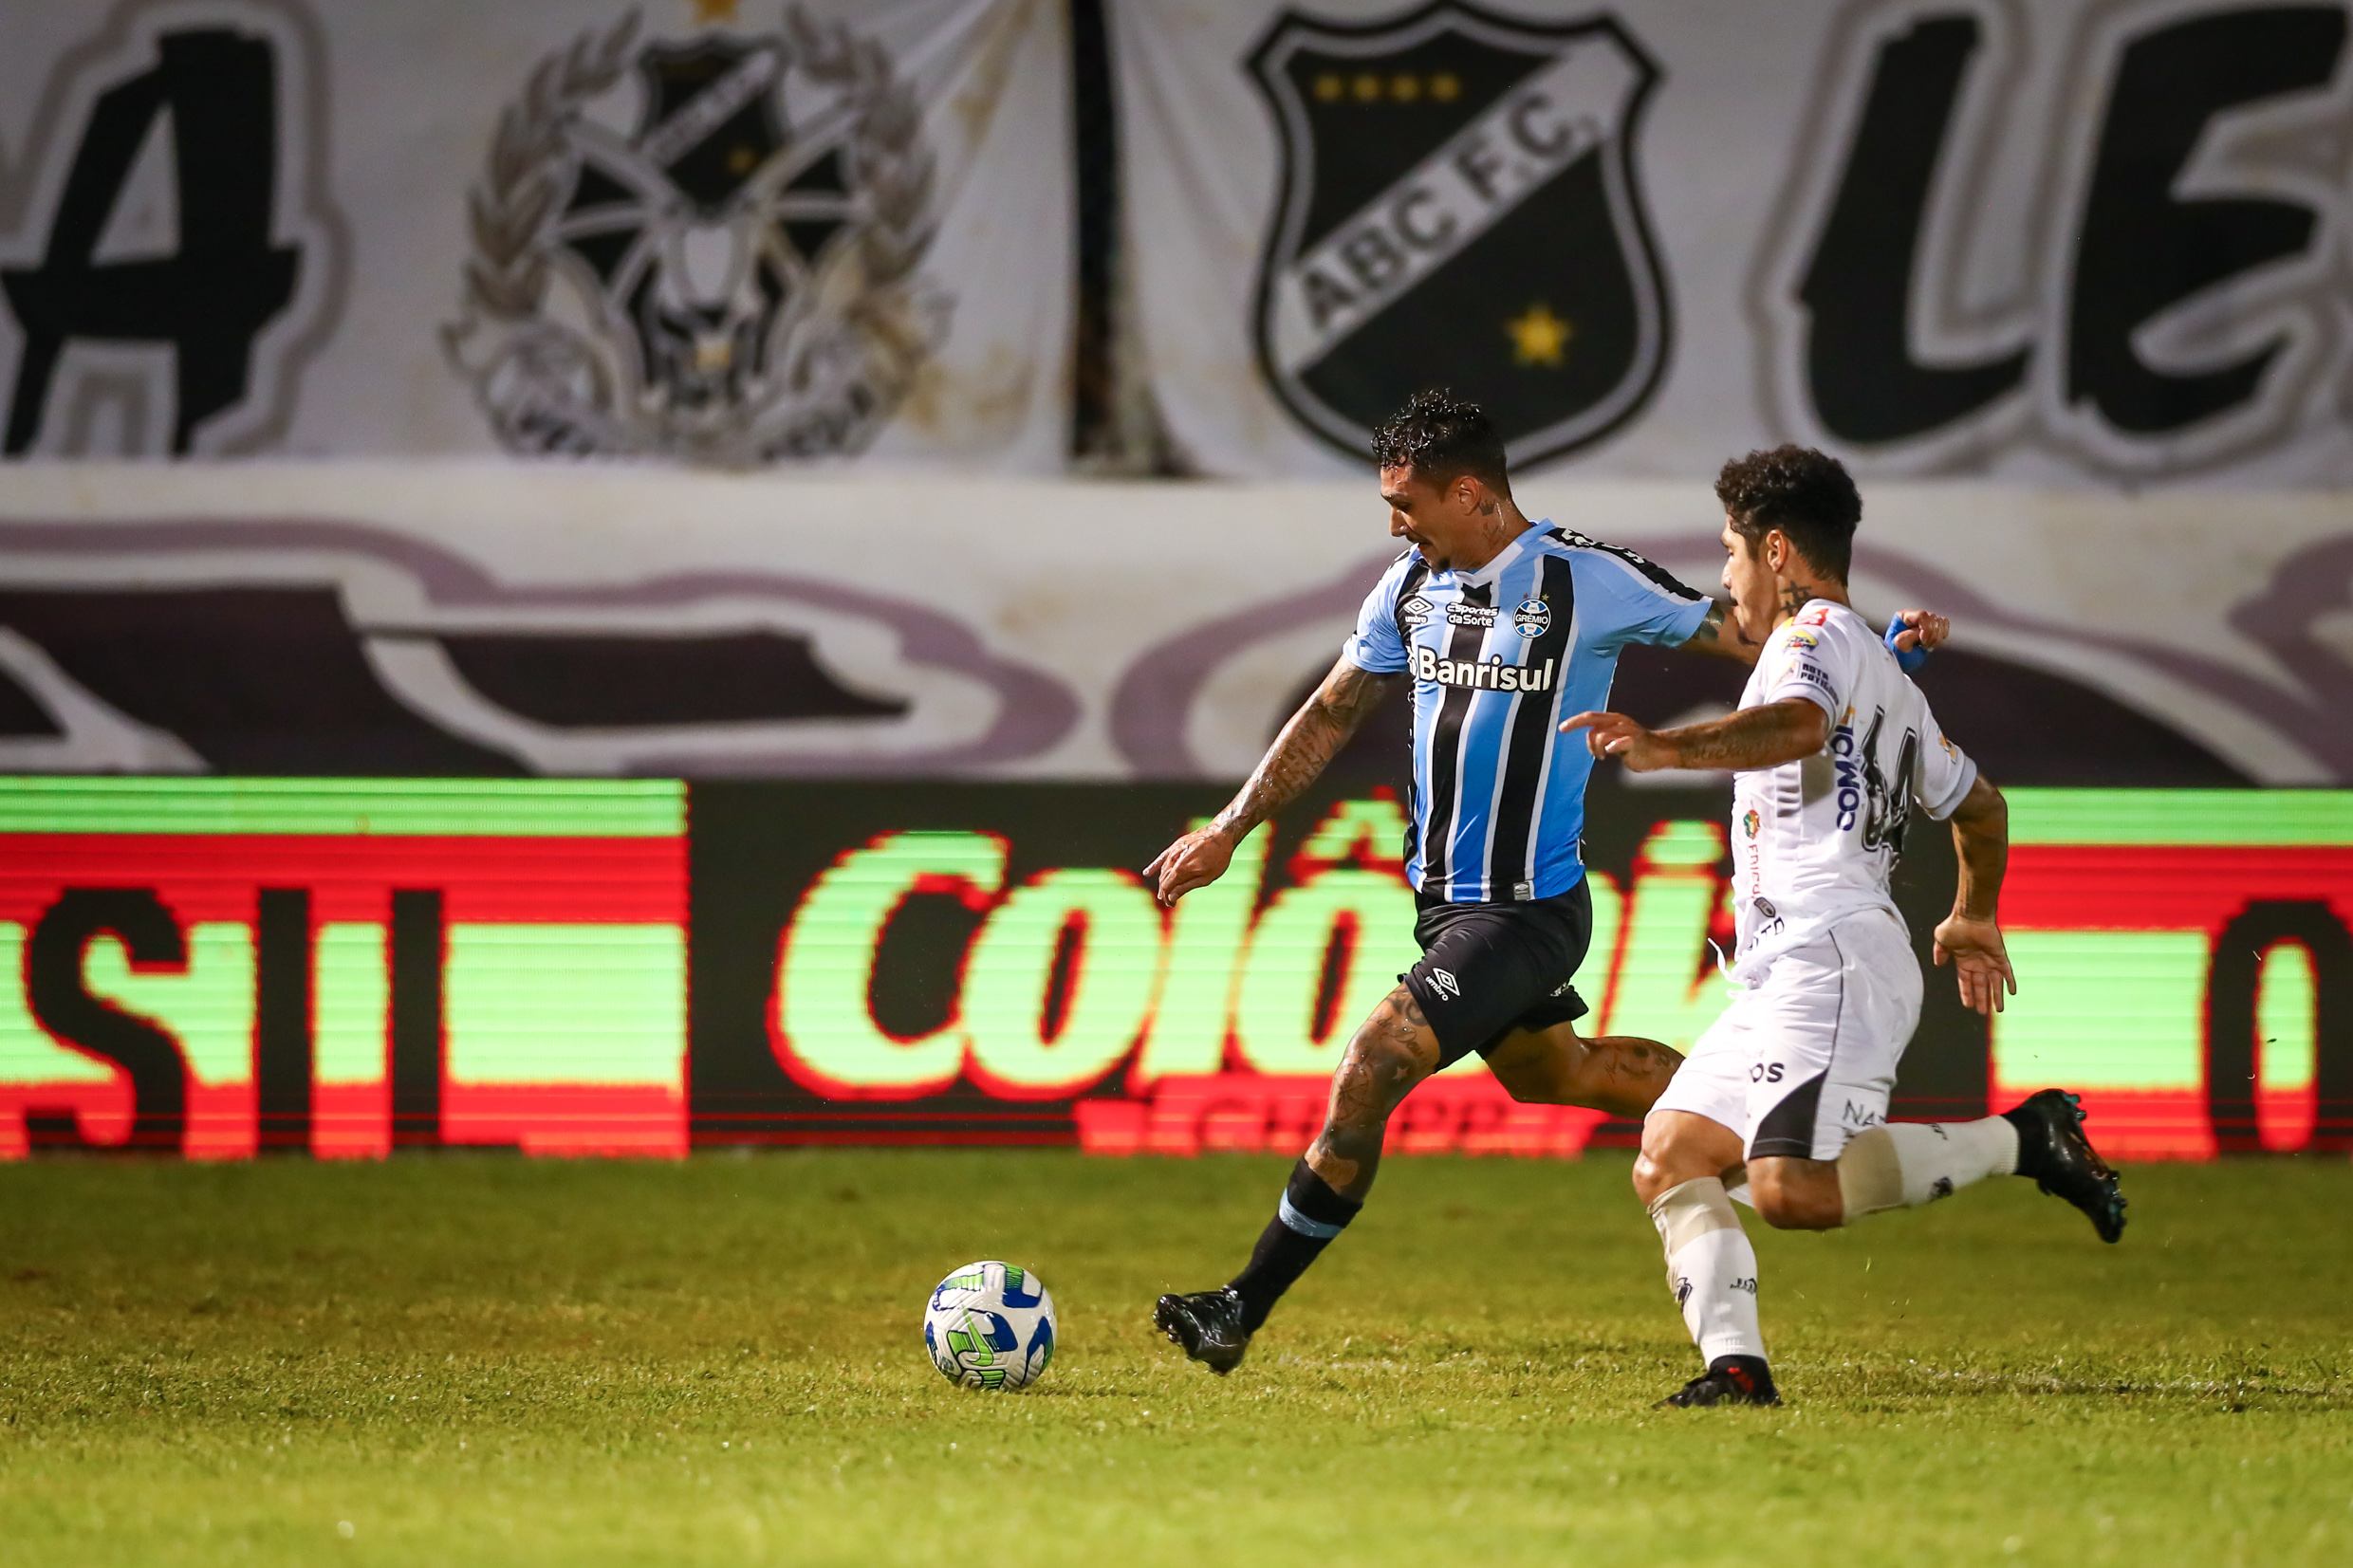 Grêmio vs ABC: A Clash of Titans in the Copa do Brasil